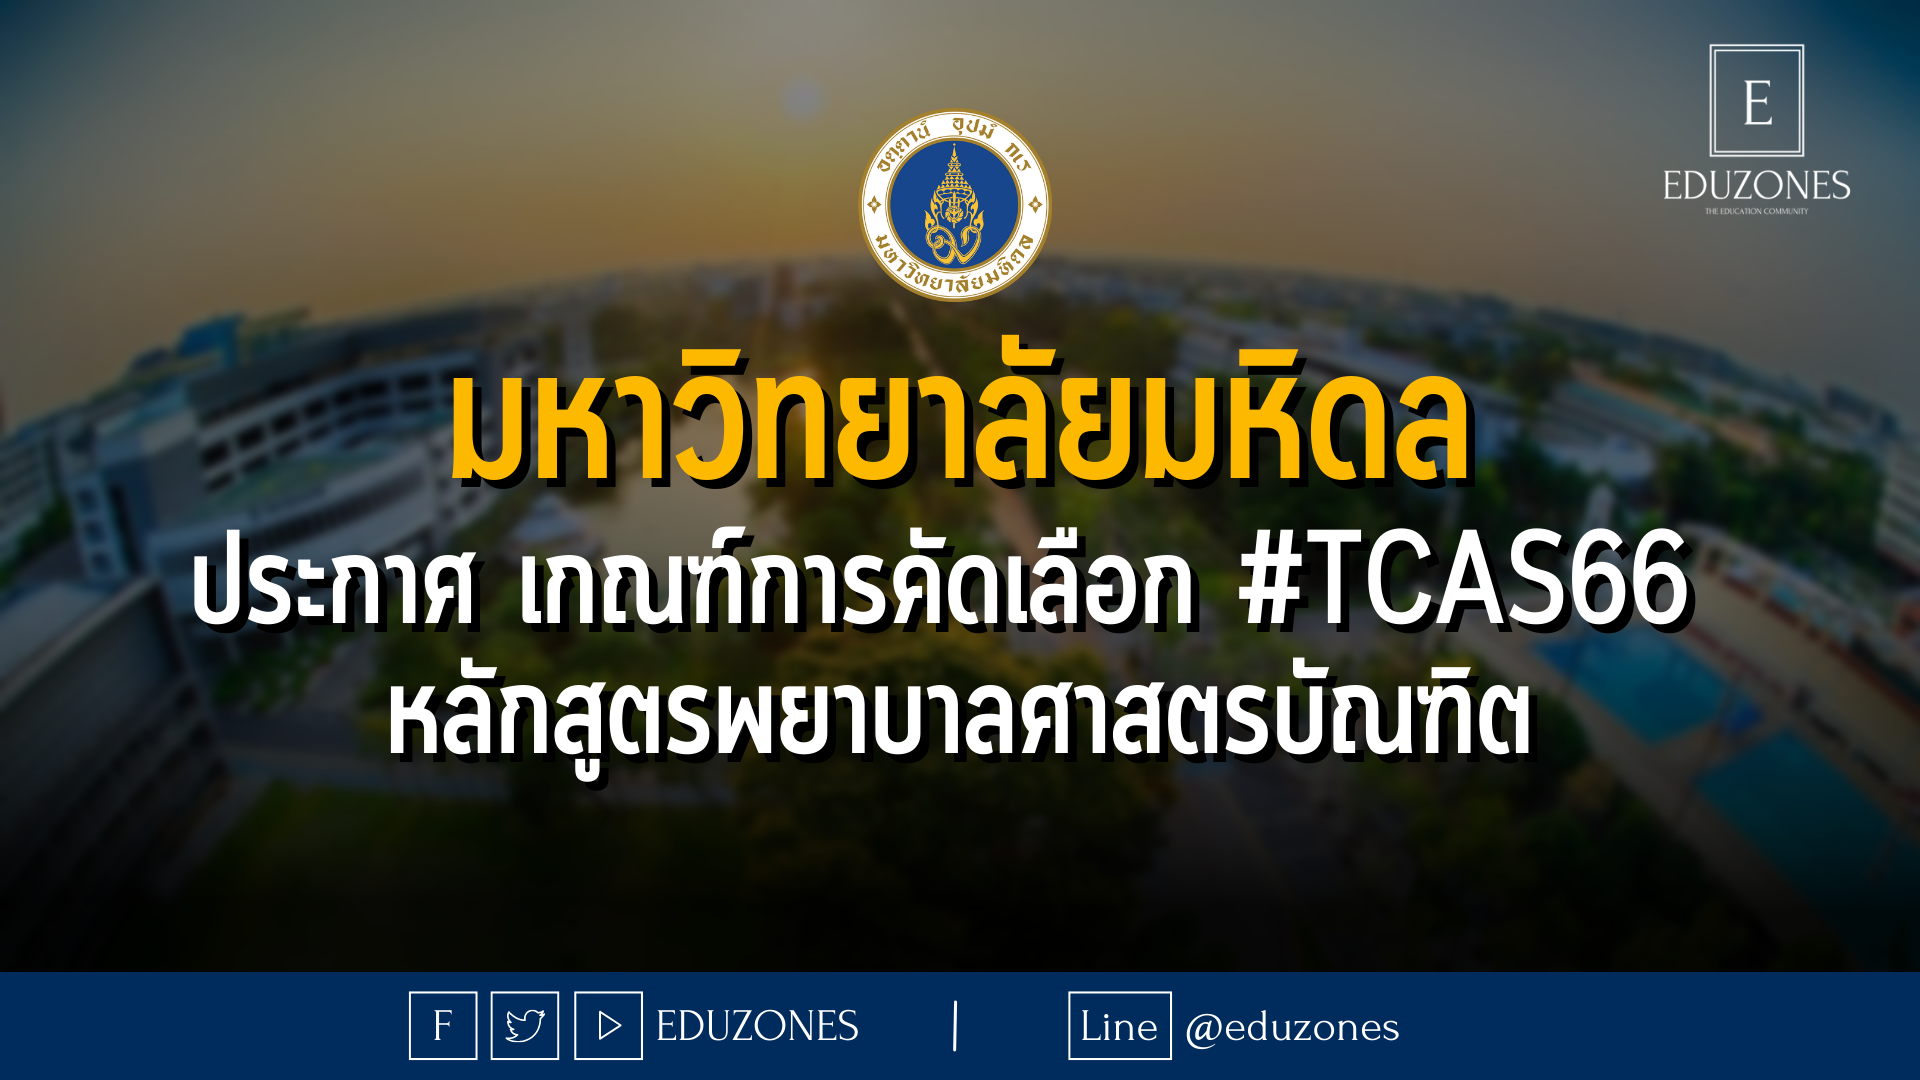 มหาวิทยาลัยมหิดล ประกาศ เกณฑ์การคัดเลือก #TCAS66  หลักสูตรพยาบาลศาสตรบัณฑิต